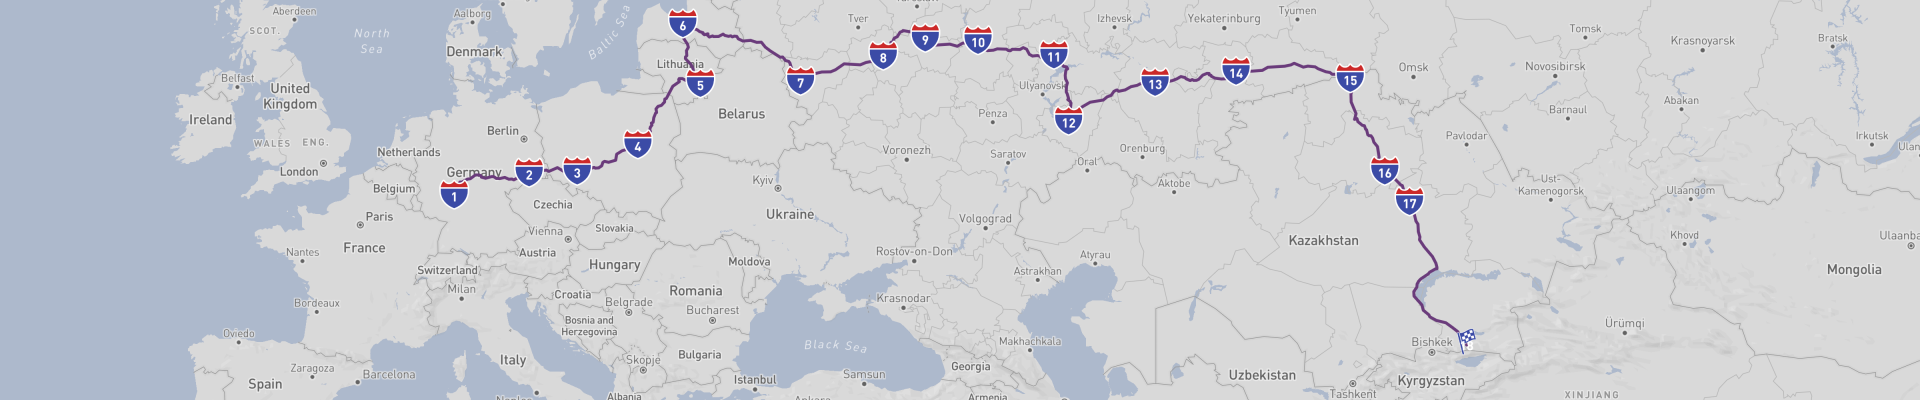 Road Trip van Europa naar Centraal-Azië